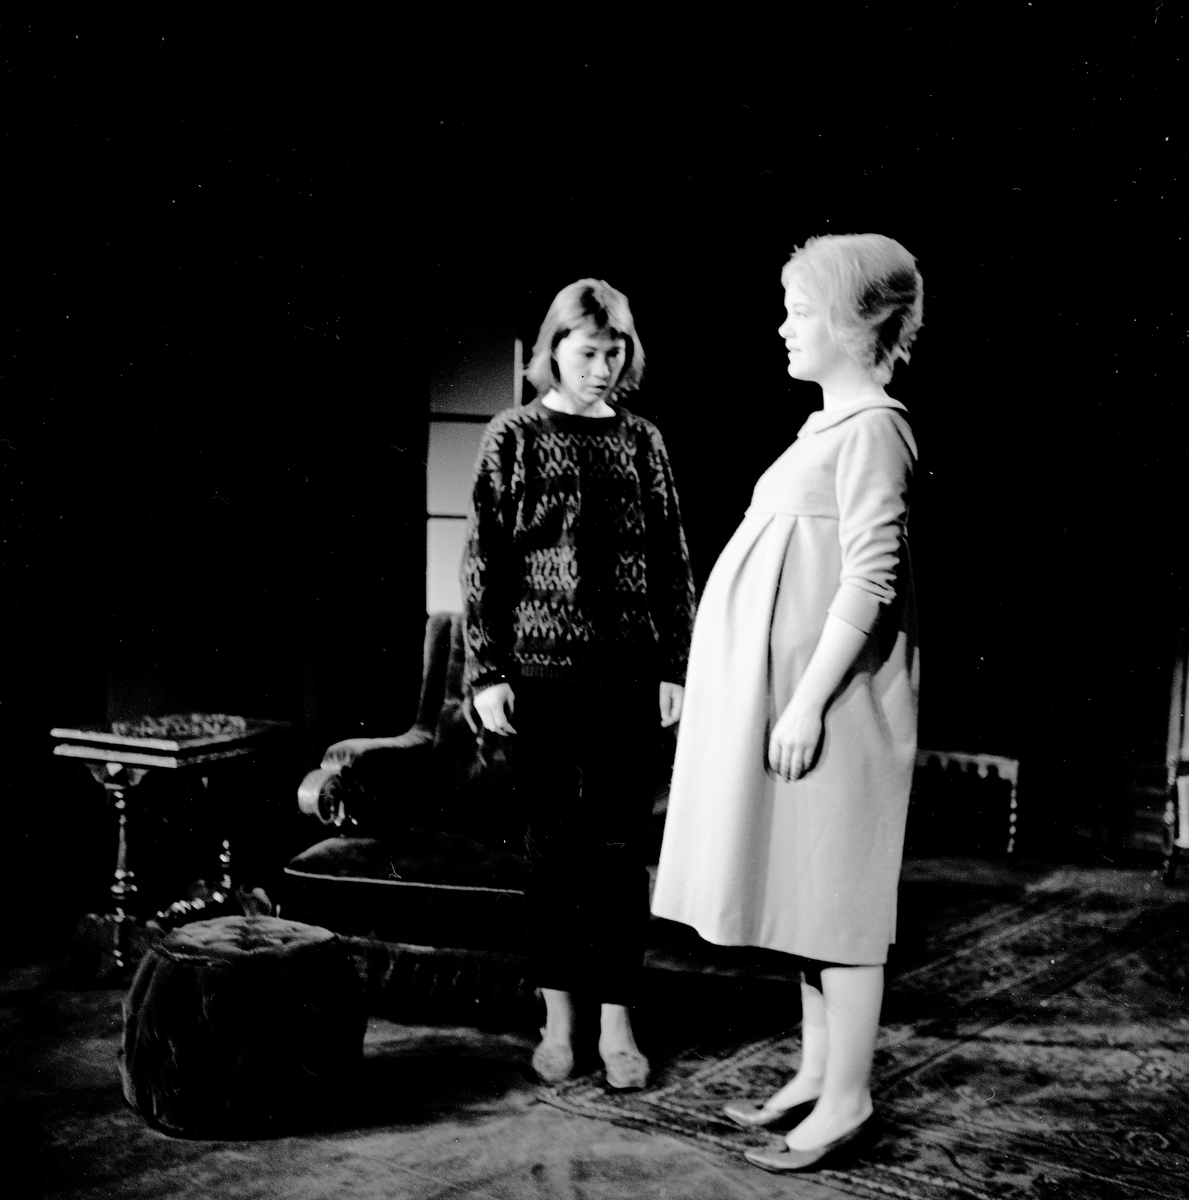 Fra teaterforstillingen "Våre torsdager" på Nationaltheatret - Amfiscenen. To kvinner på scenen. Fotografert 18. mars 1965.